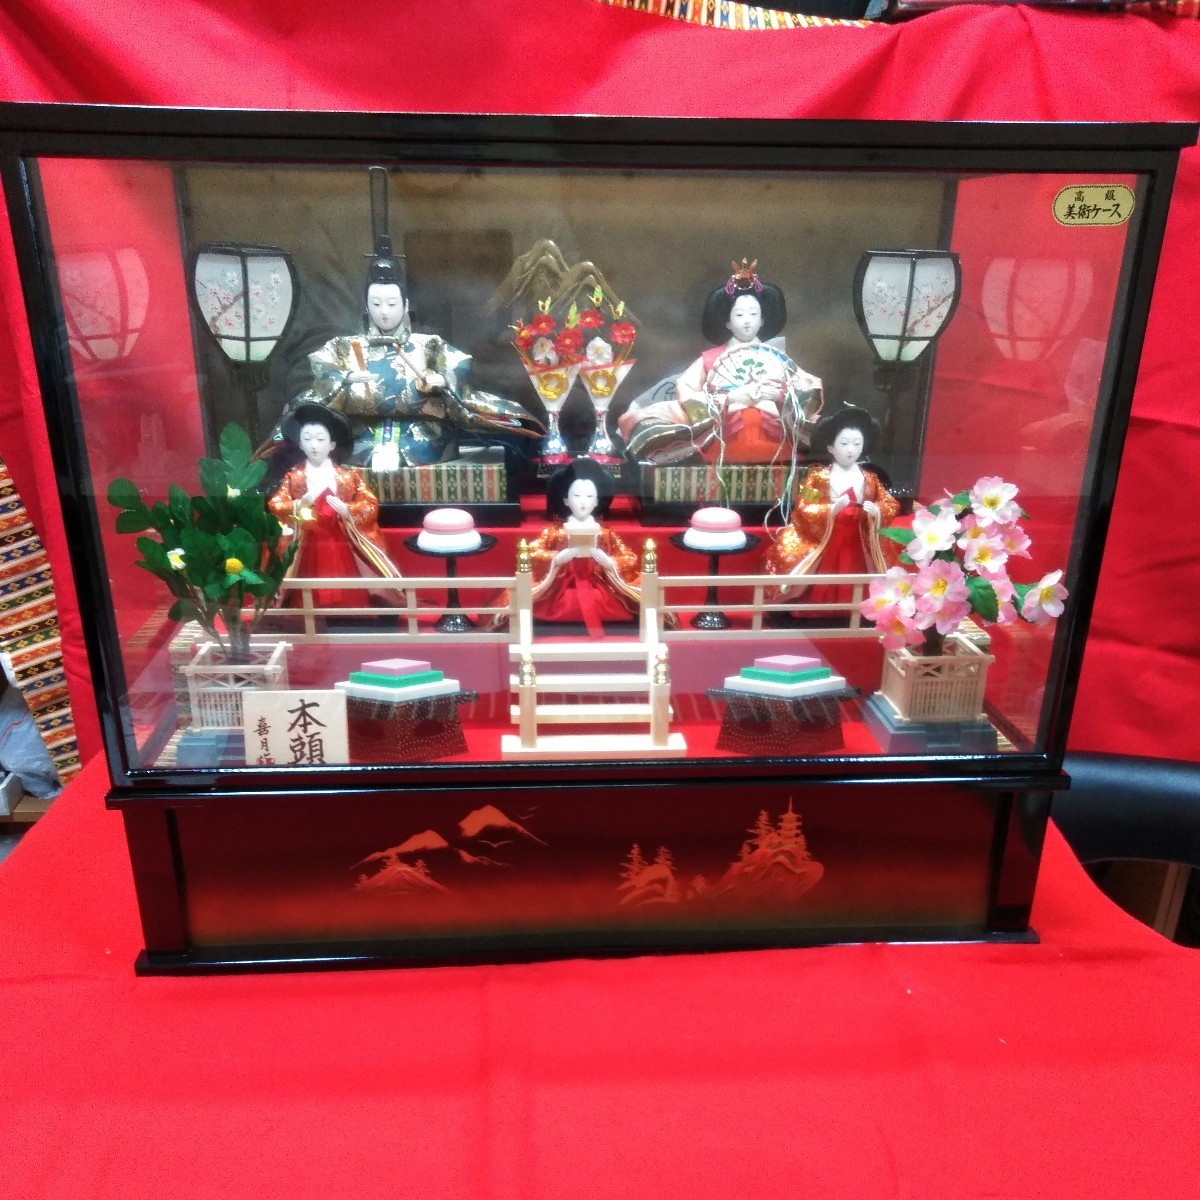 g_t R792 玻璃盒昭和复古雏娃娃, 本藤木助, 附赠音乐盒, 作为女儿节的娃娃装饰怎么样, 季节, 一年一次的活动, 娃娃节, 雏娃娃